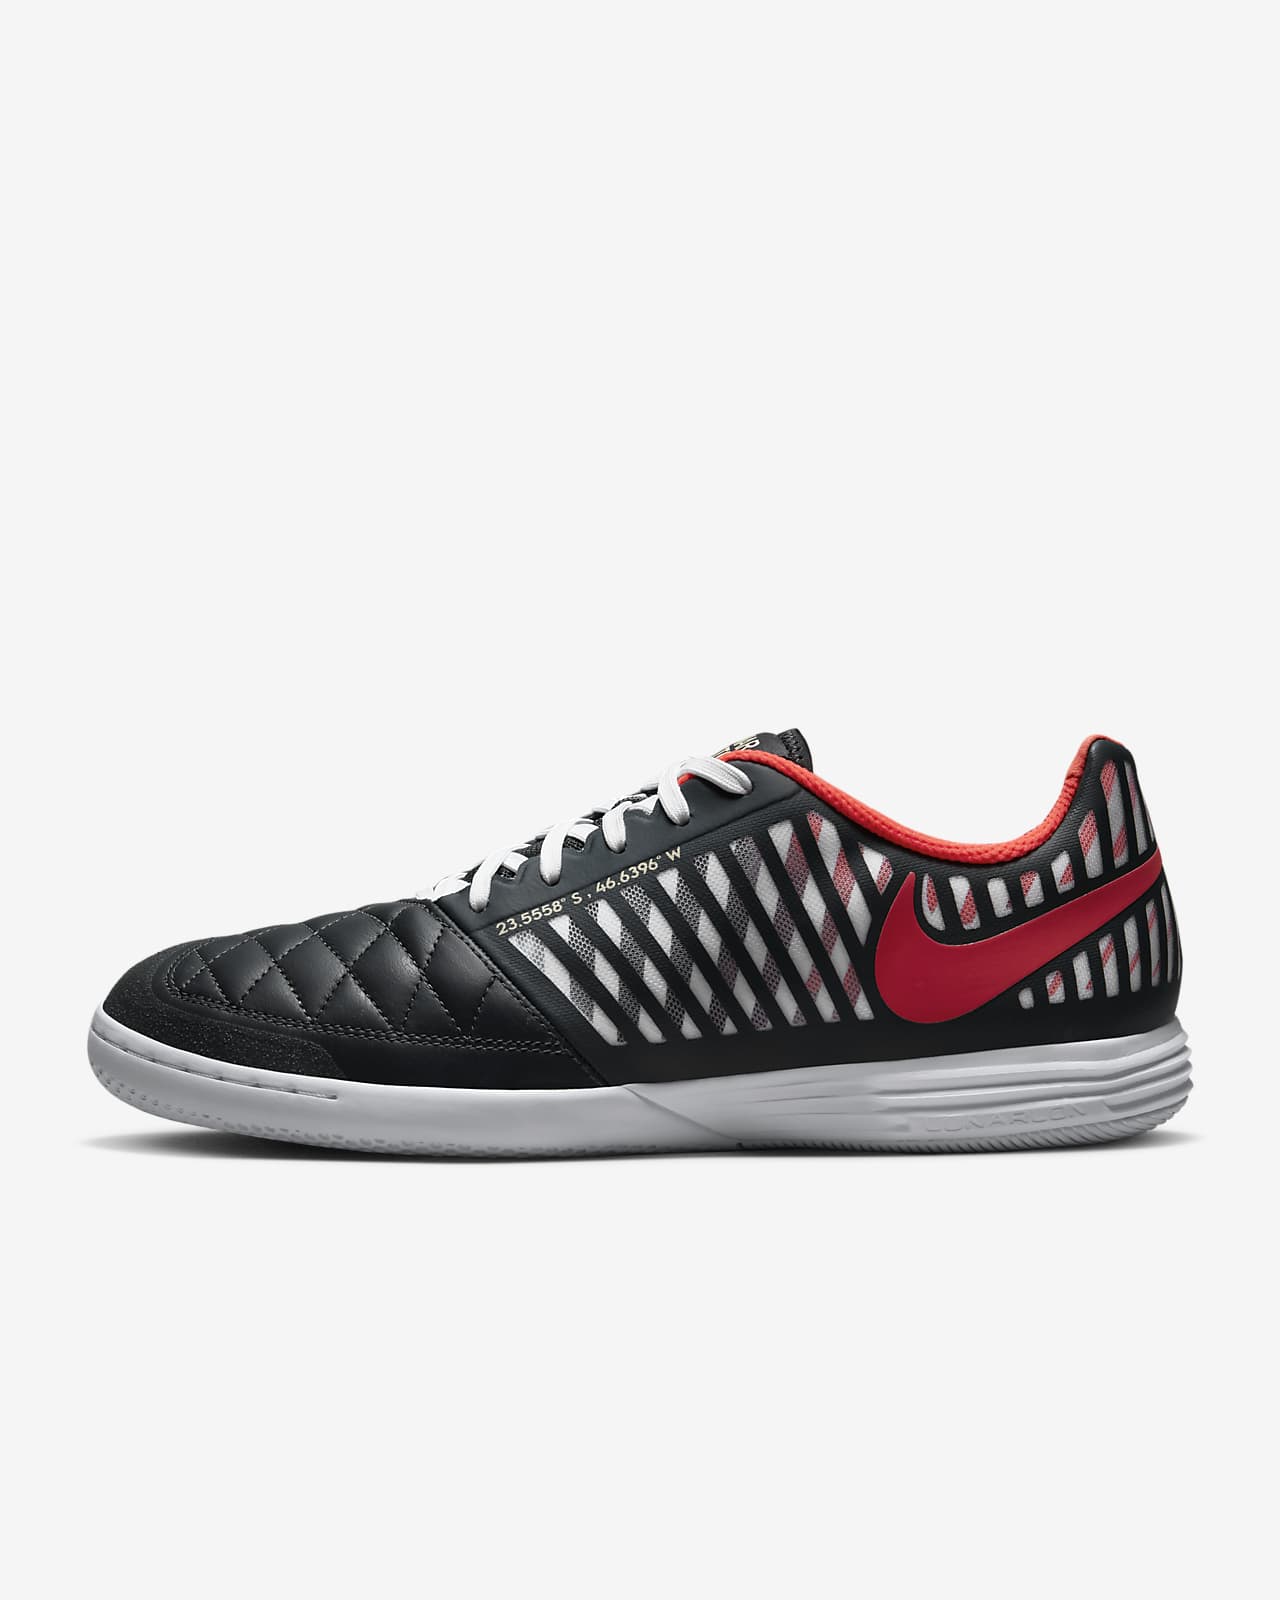 รองเท้าฟุตบอลไม่หุ้มข้อสำหรับสนามในร่ม/คอร์ท Nike Lunargato II